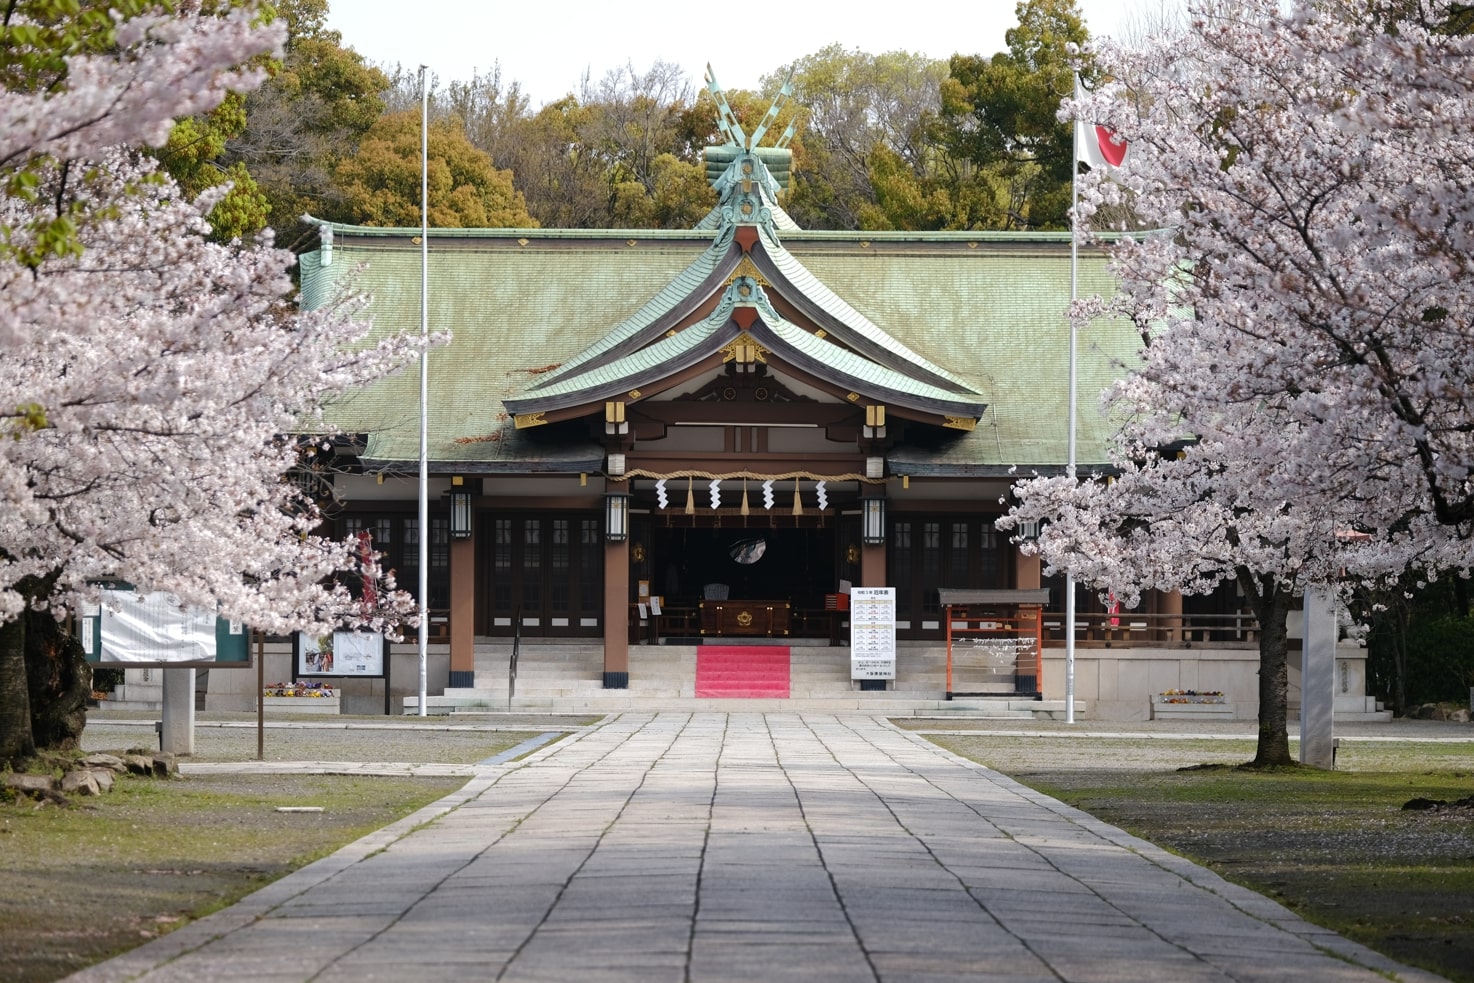 大阪護国神社